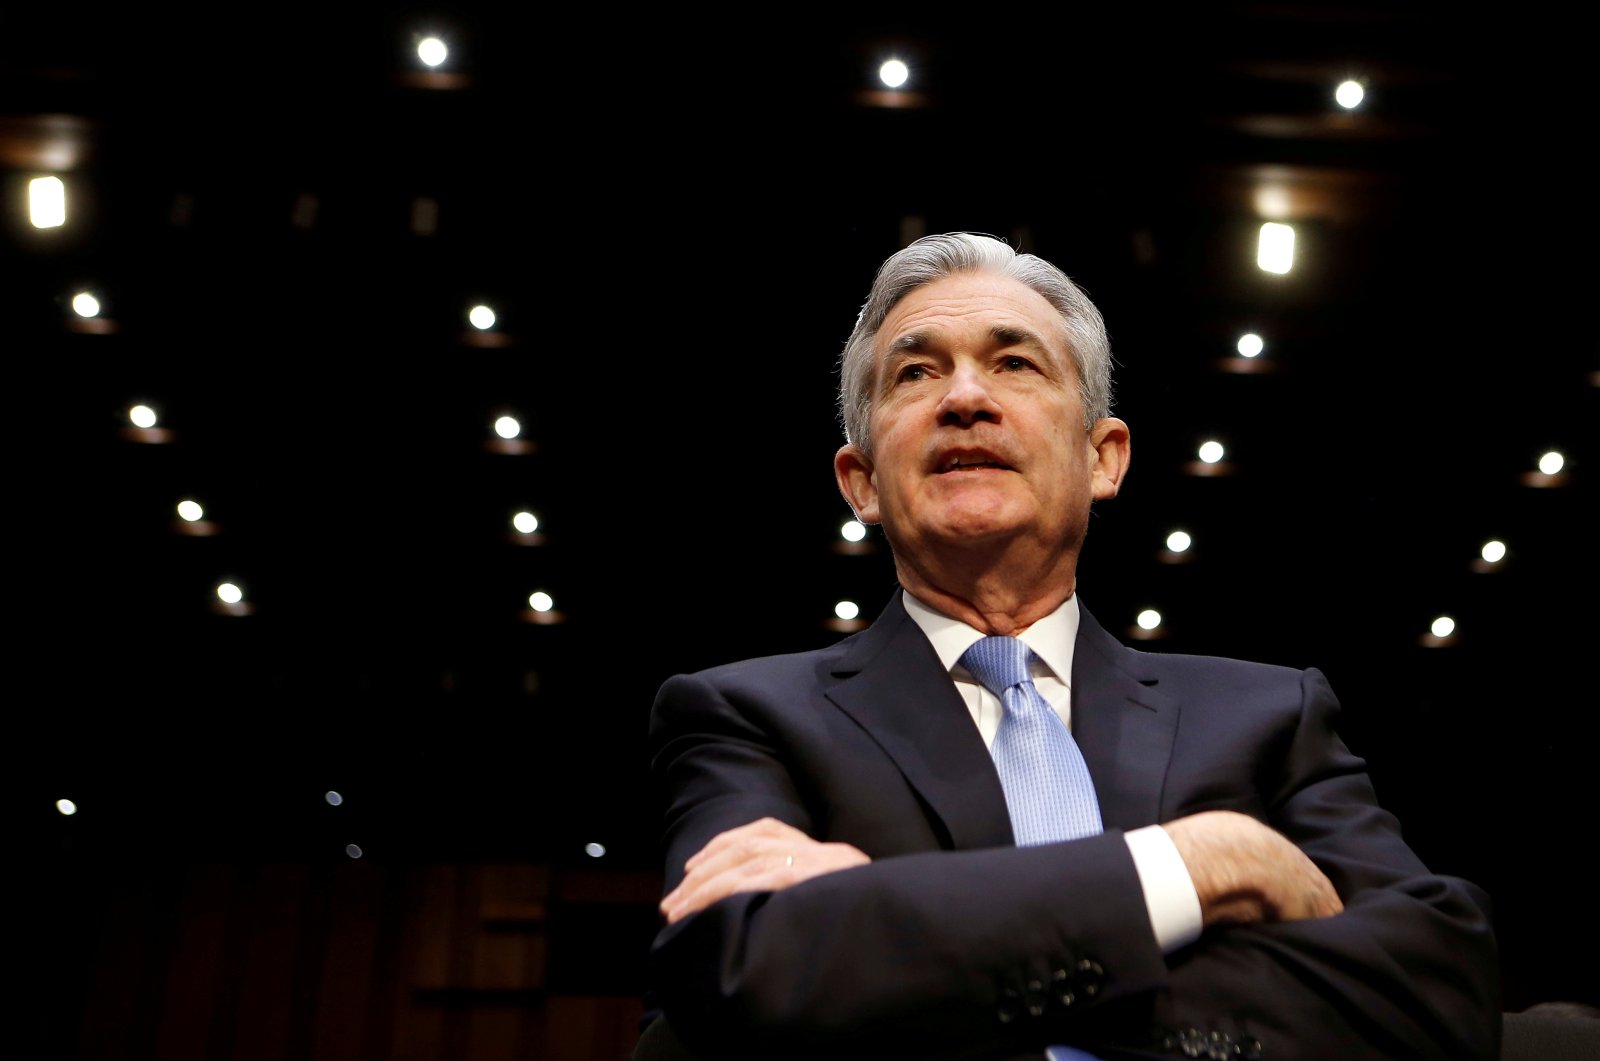 Biden menunjuk Powell sebagai ketua Fed, Brainard untuk mendapatkan slot No. 2